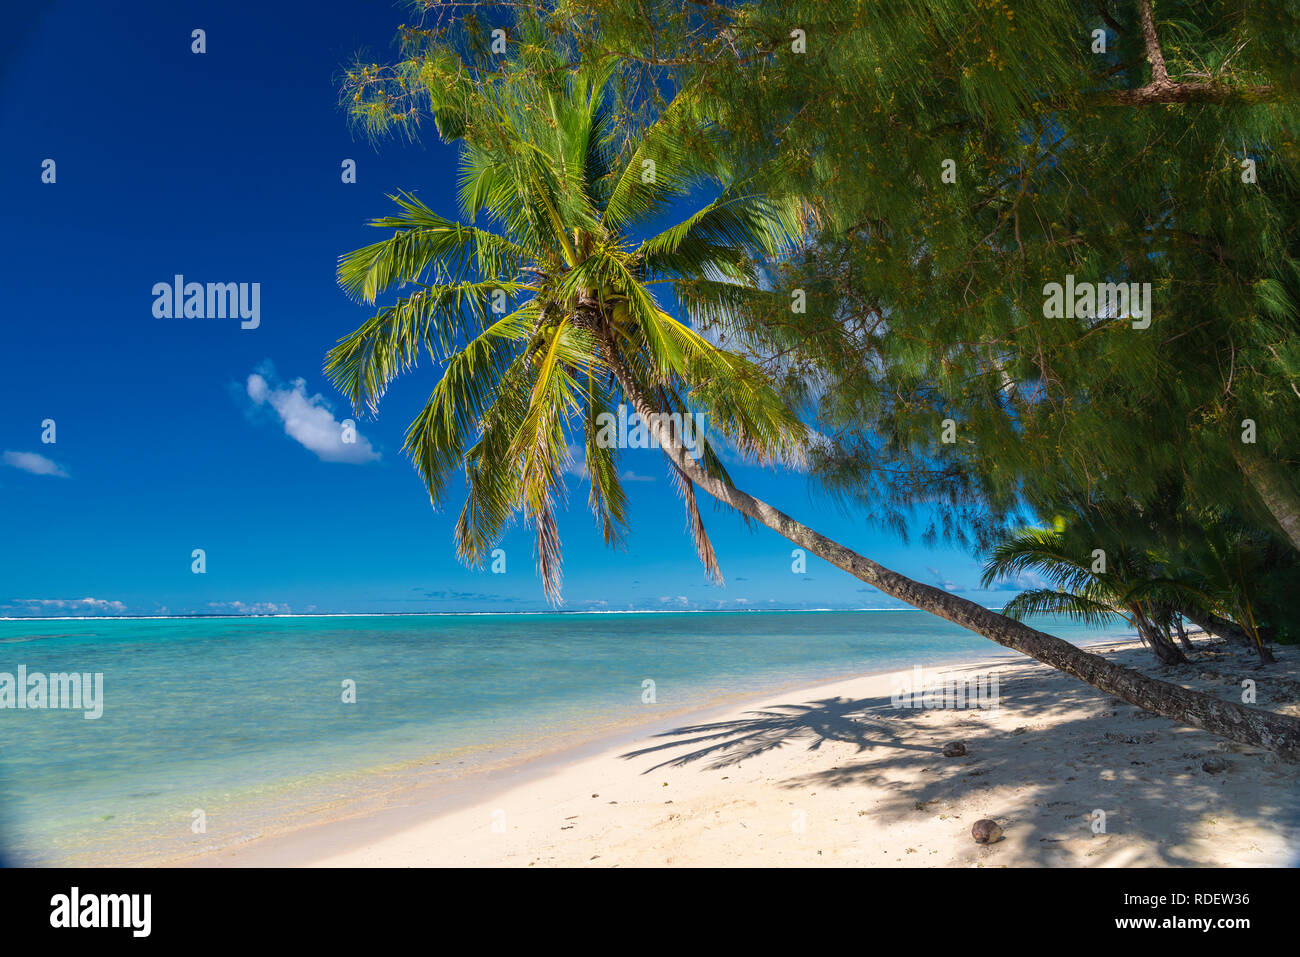 Bella spiaggia tropicale con palme da cocco che sovrasta una idilliaca spiaggia di sabbia bianca sull'isola di Aitutaki, Isole Cook, Sud Pacifico Foto Stock